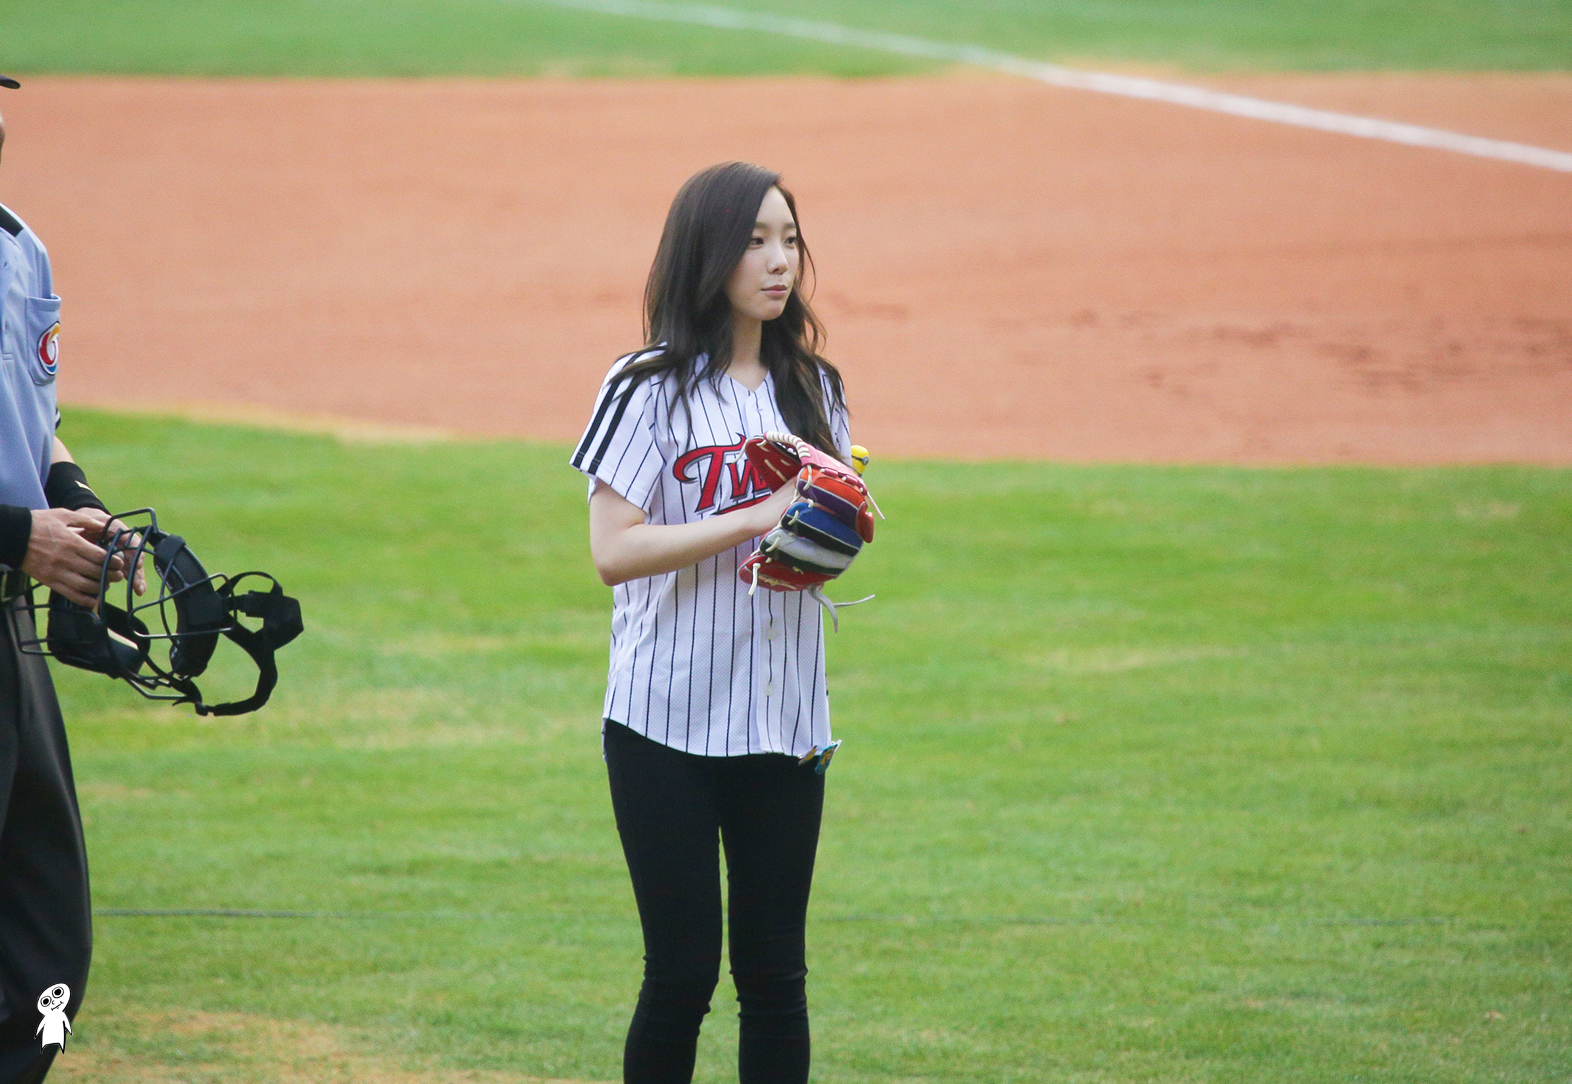 [PIC][27-08-2013]TaeYeon và SeoHyun ném bóng mở màn cho trận đấu bóng chày tại SVĐ Jamsil vào chiều nay - Page 2 2761B141521CBD8B2AEC2C